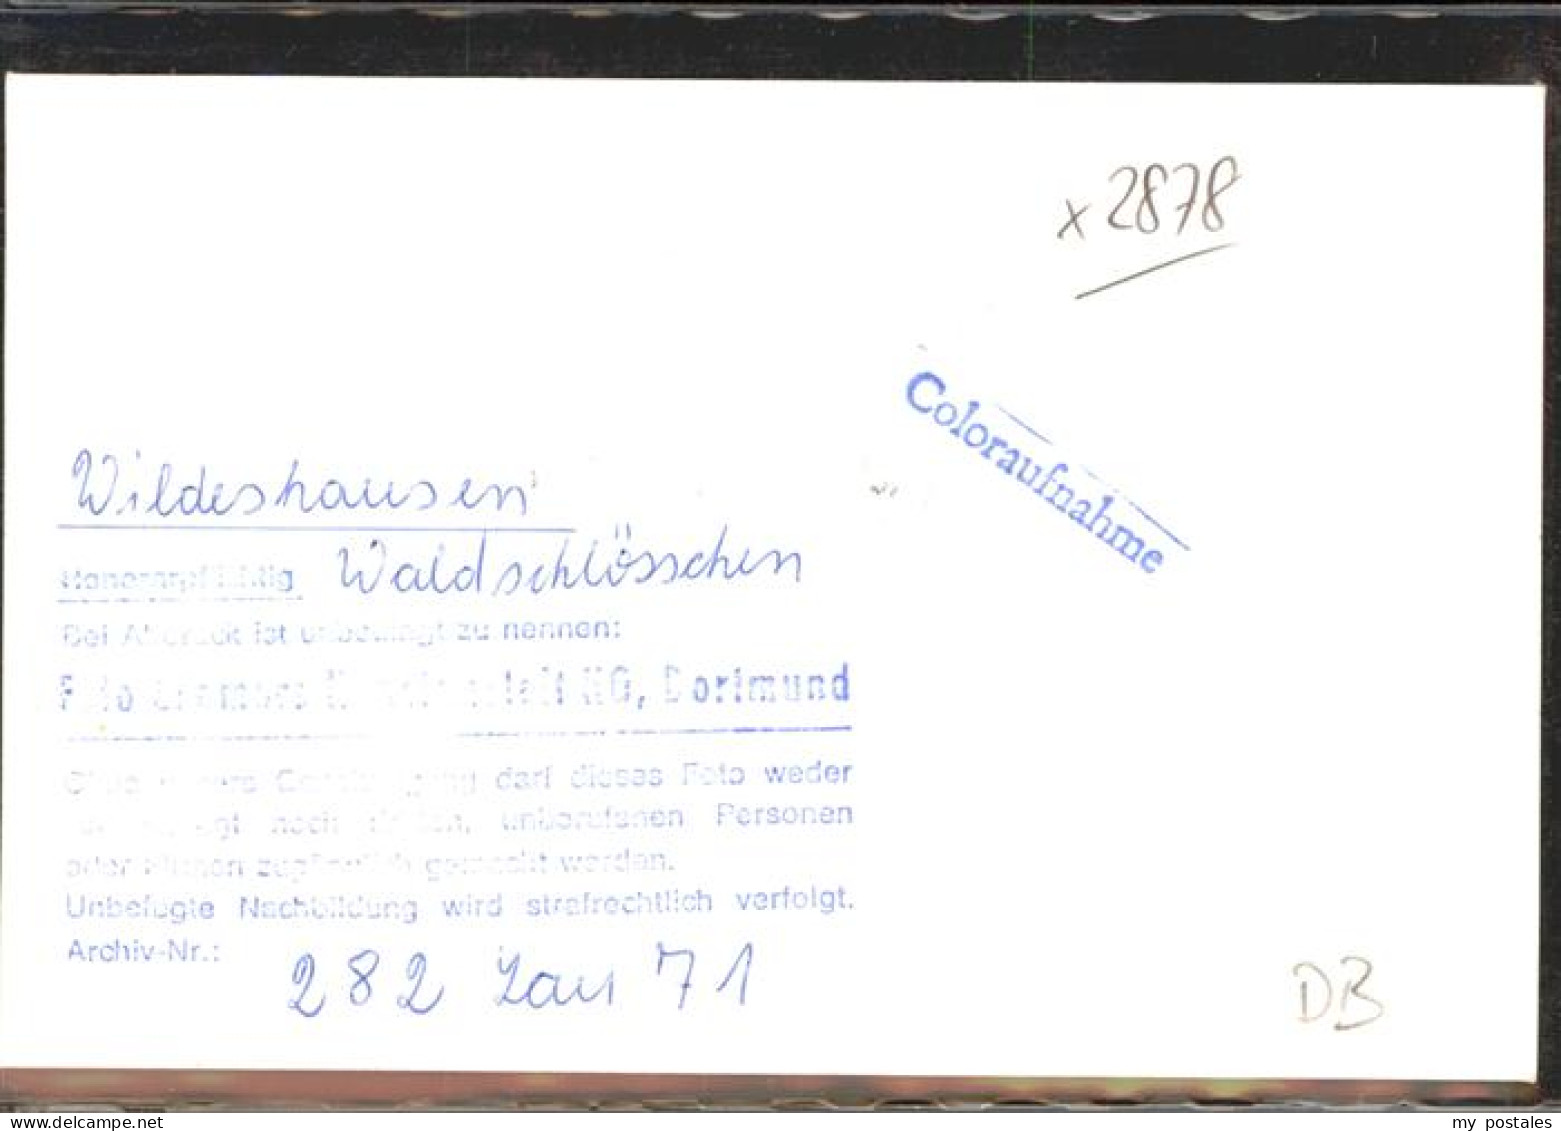 41390656 Wildeshausen Restaurant Waldschloesschen Aldrup - Wildeshausen